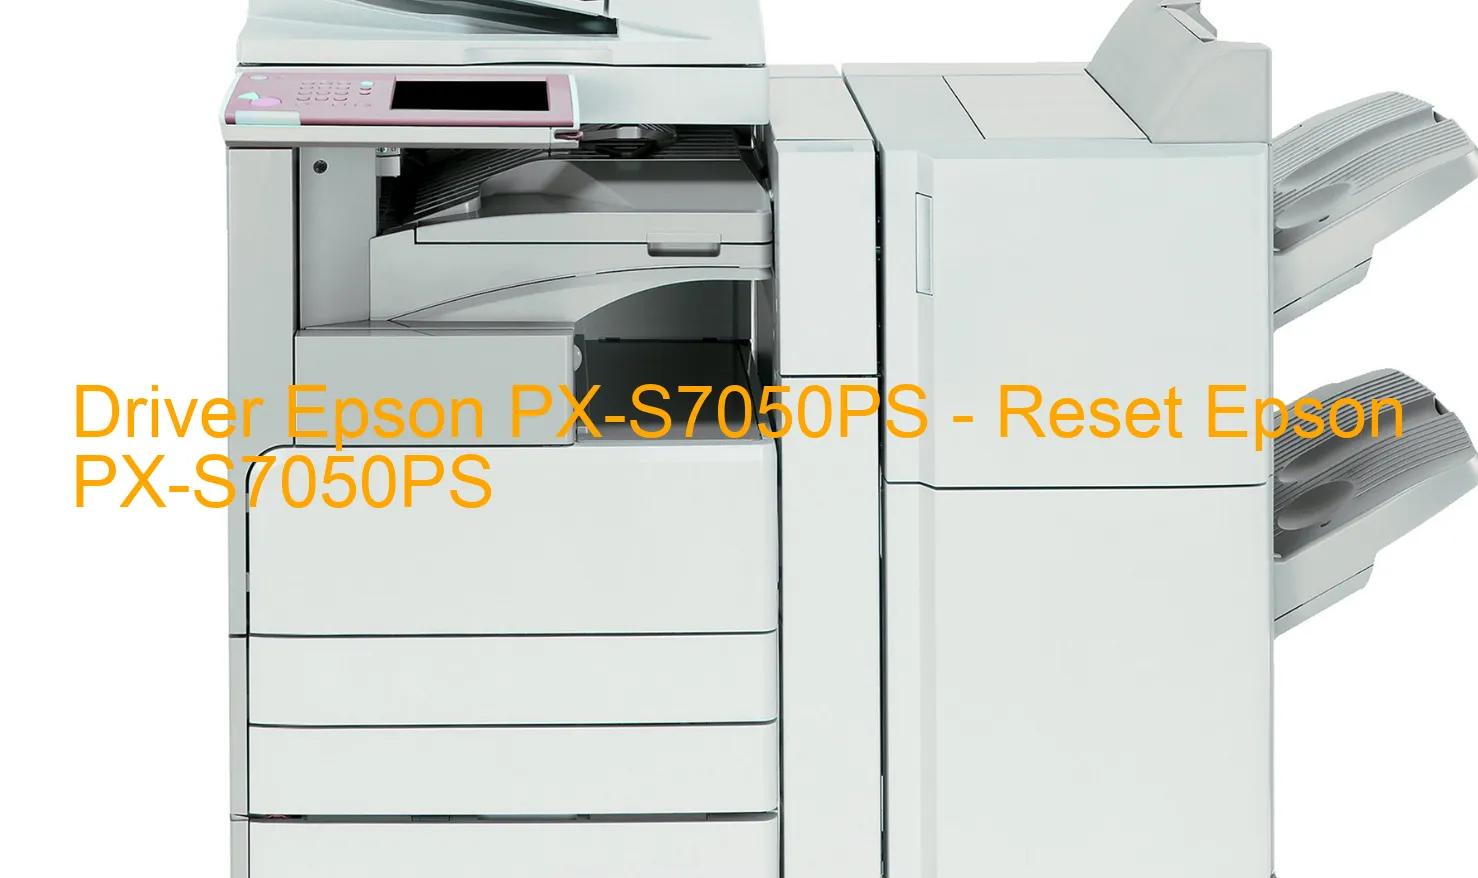 Epson PX-S7050PSのドライバー、Epson PX-S7050PSのリセットソフトウェア